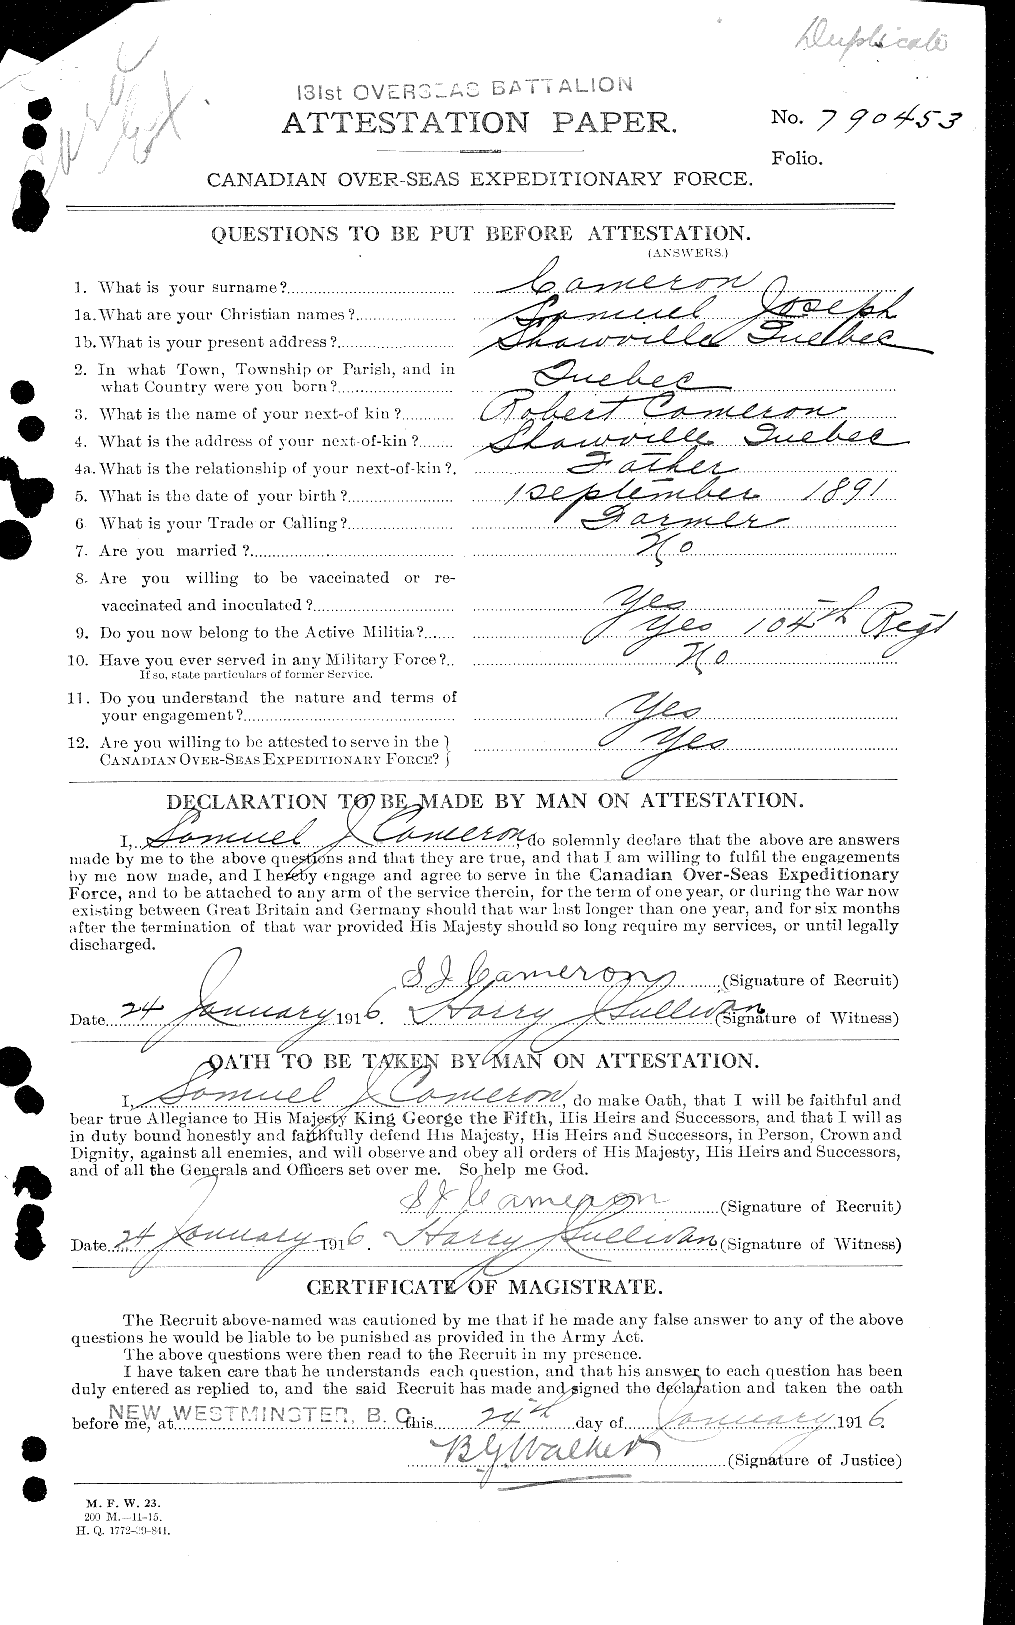 Dossiers du Personnel de la Première Guerre mondiale - CEC 002542a